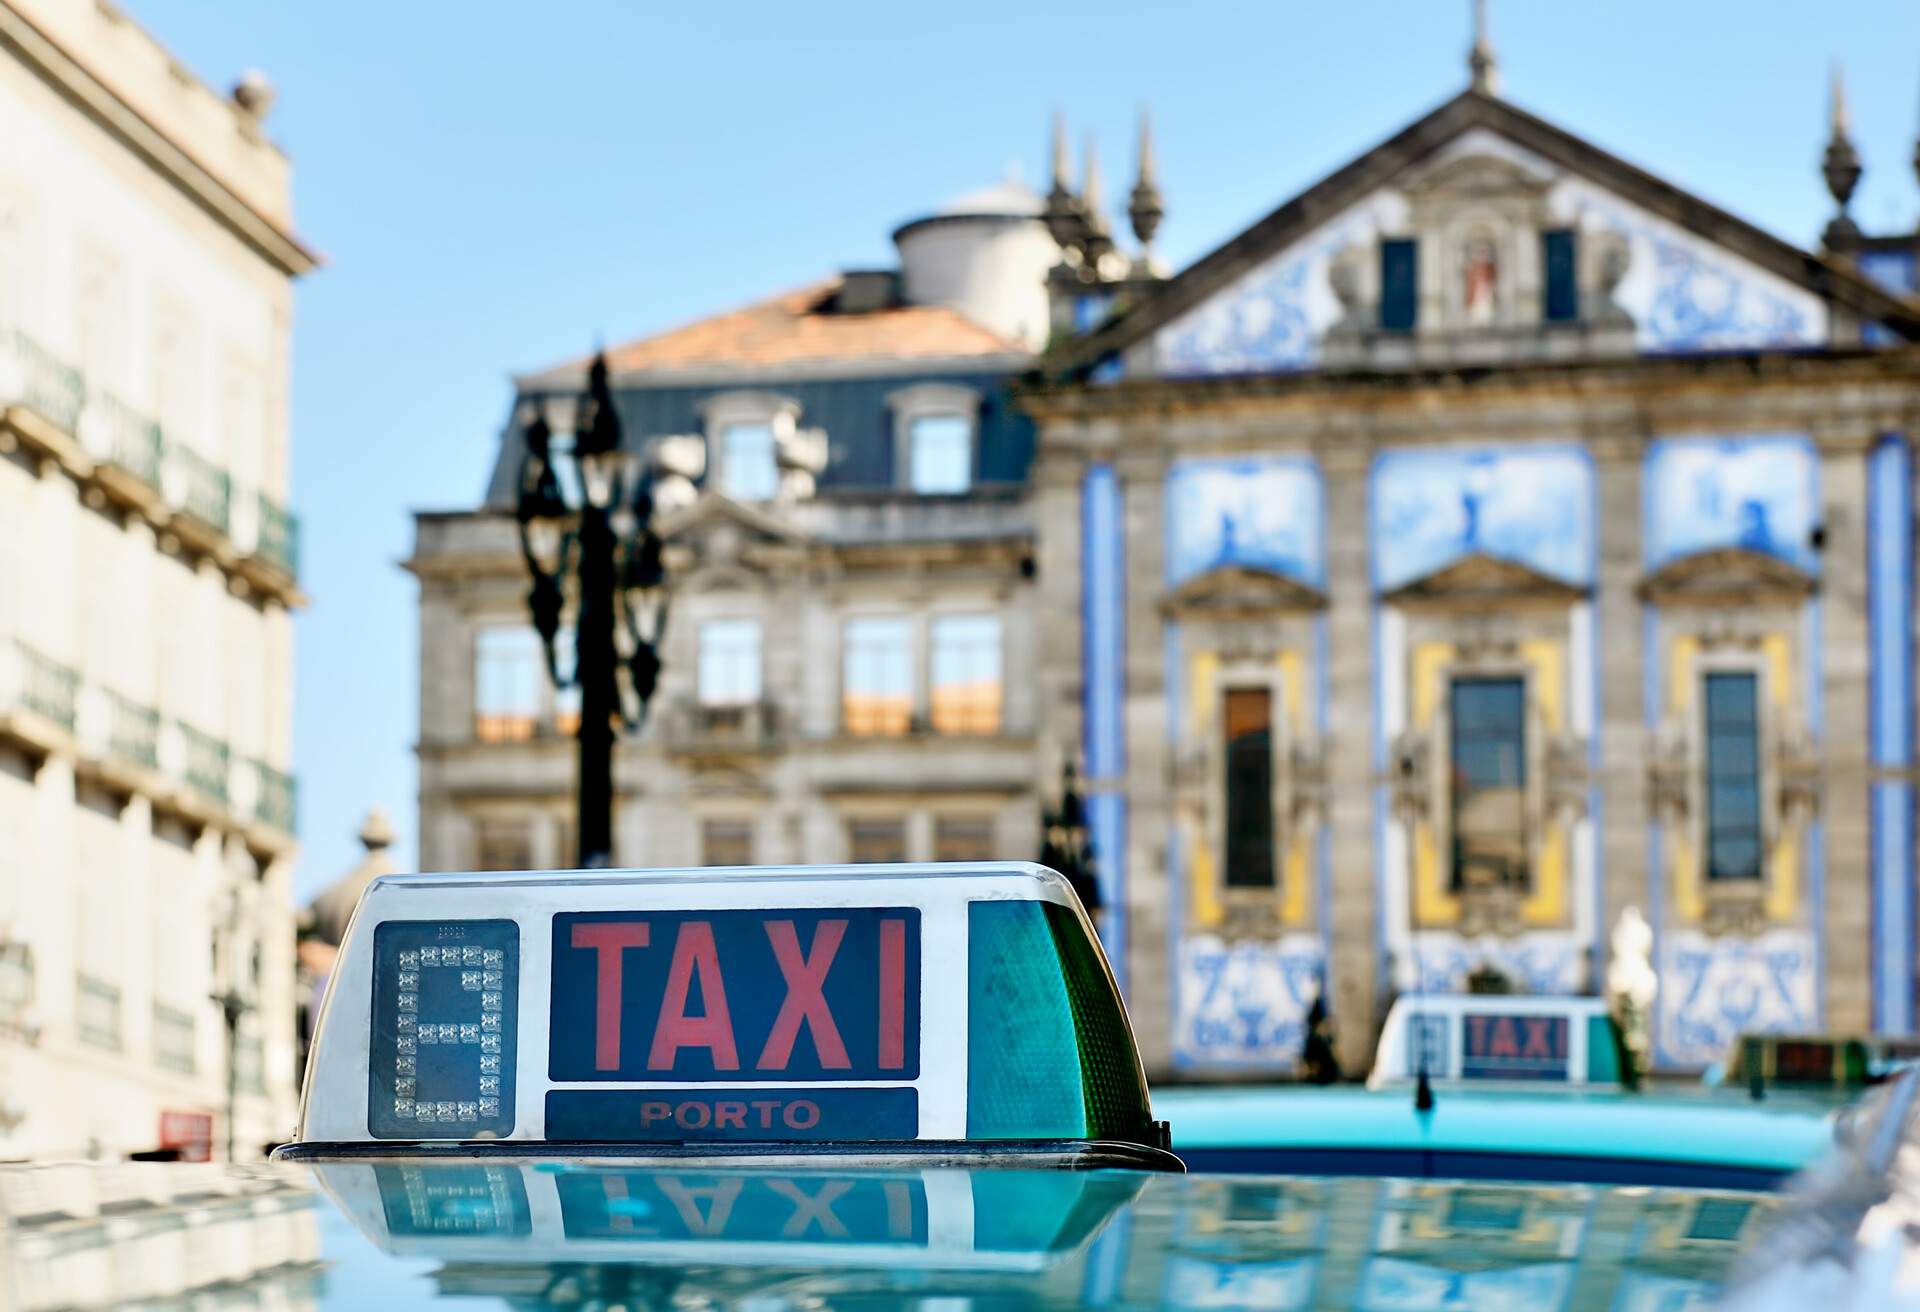 Porto taxi for hire in the centre of town in Porto